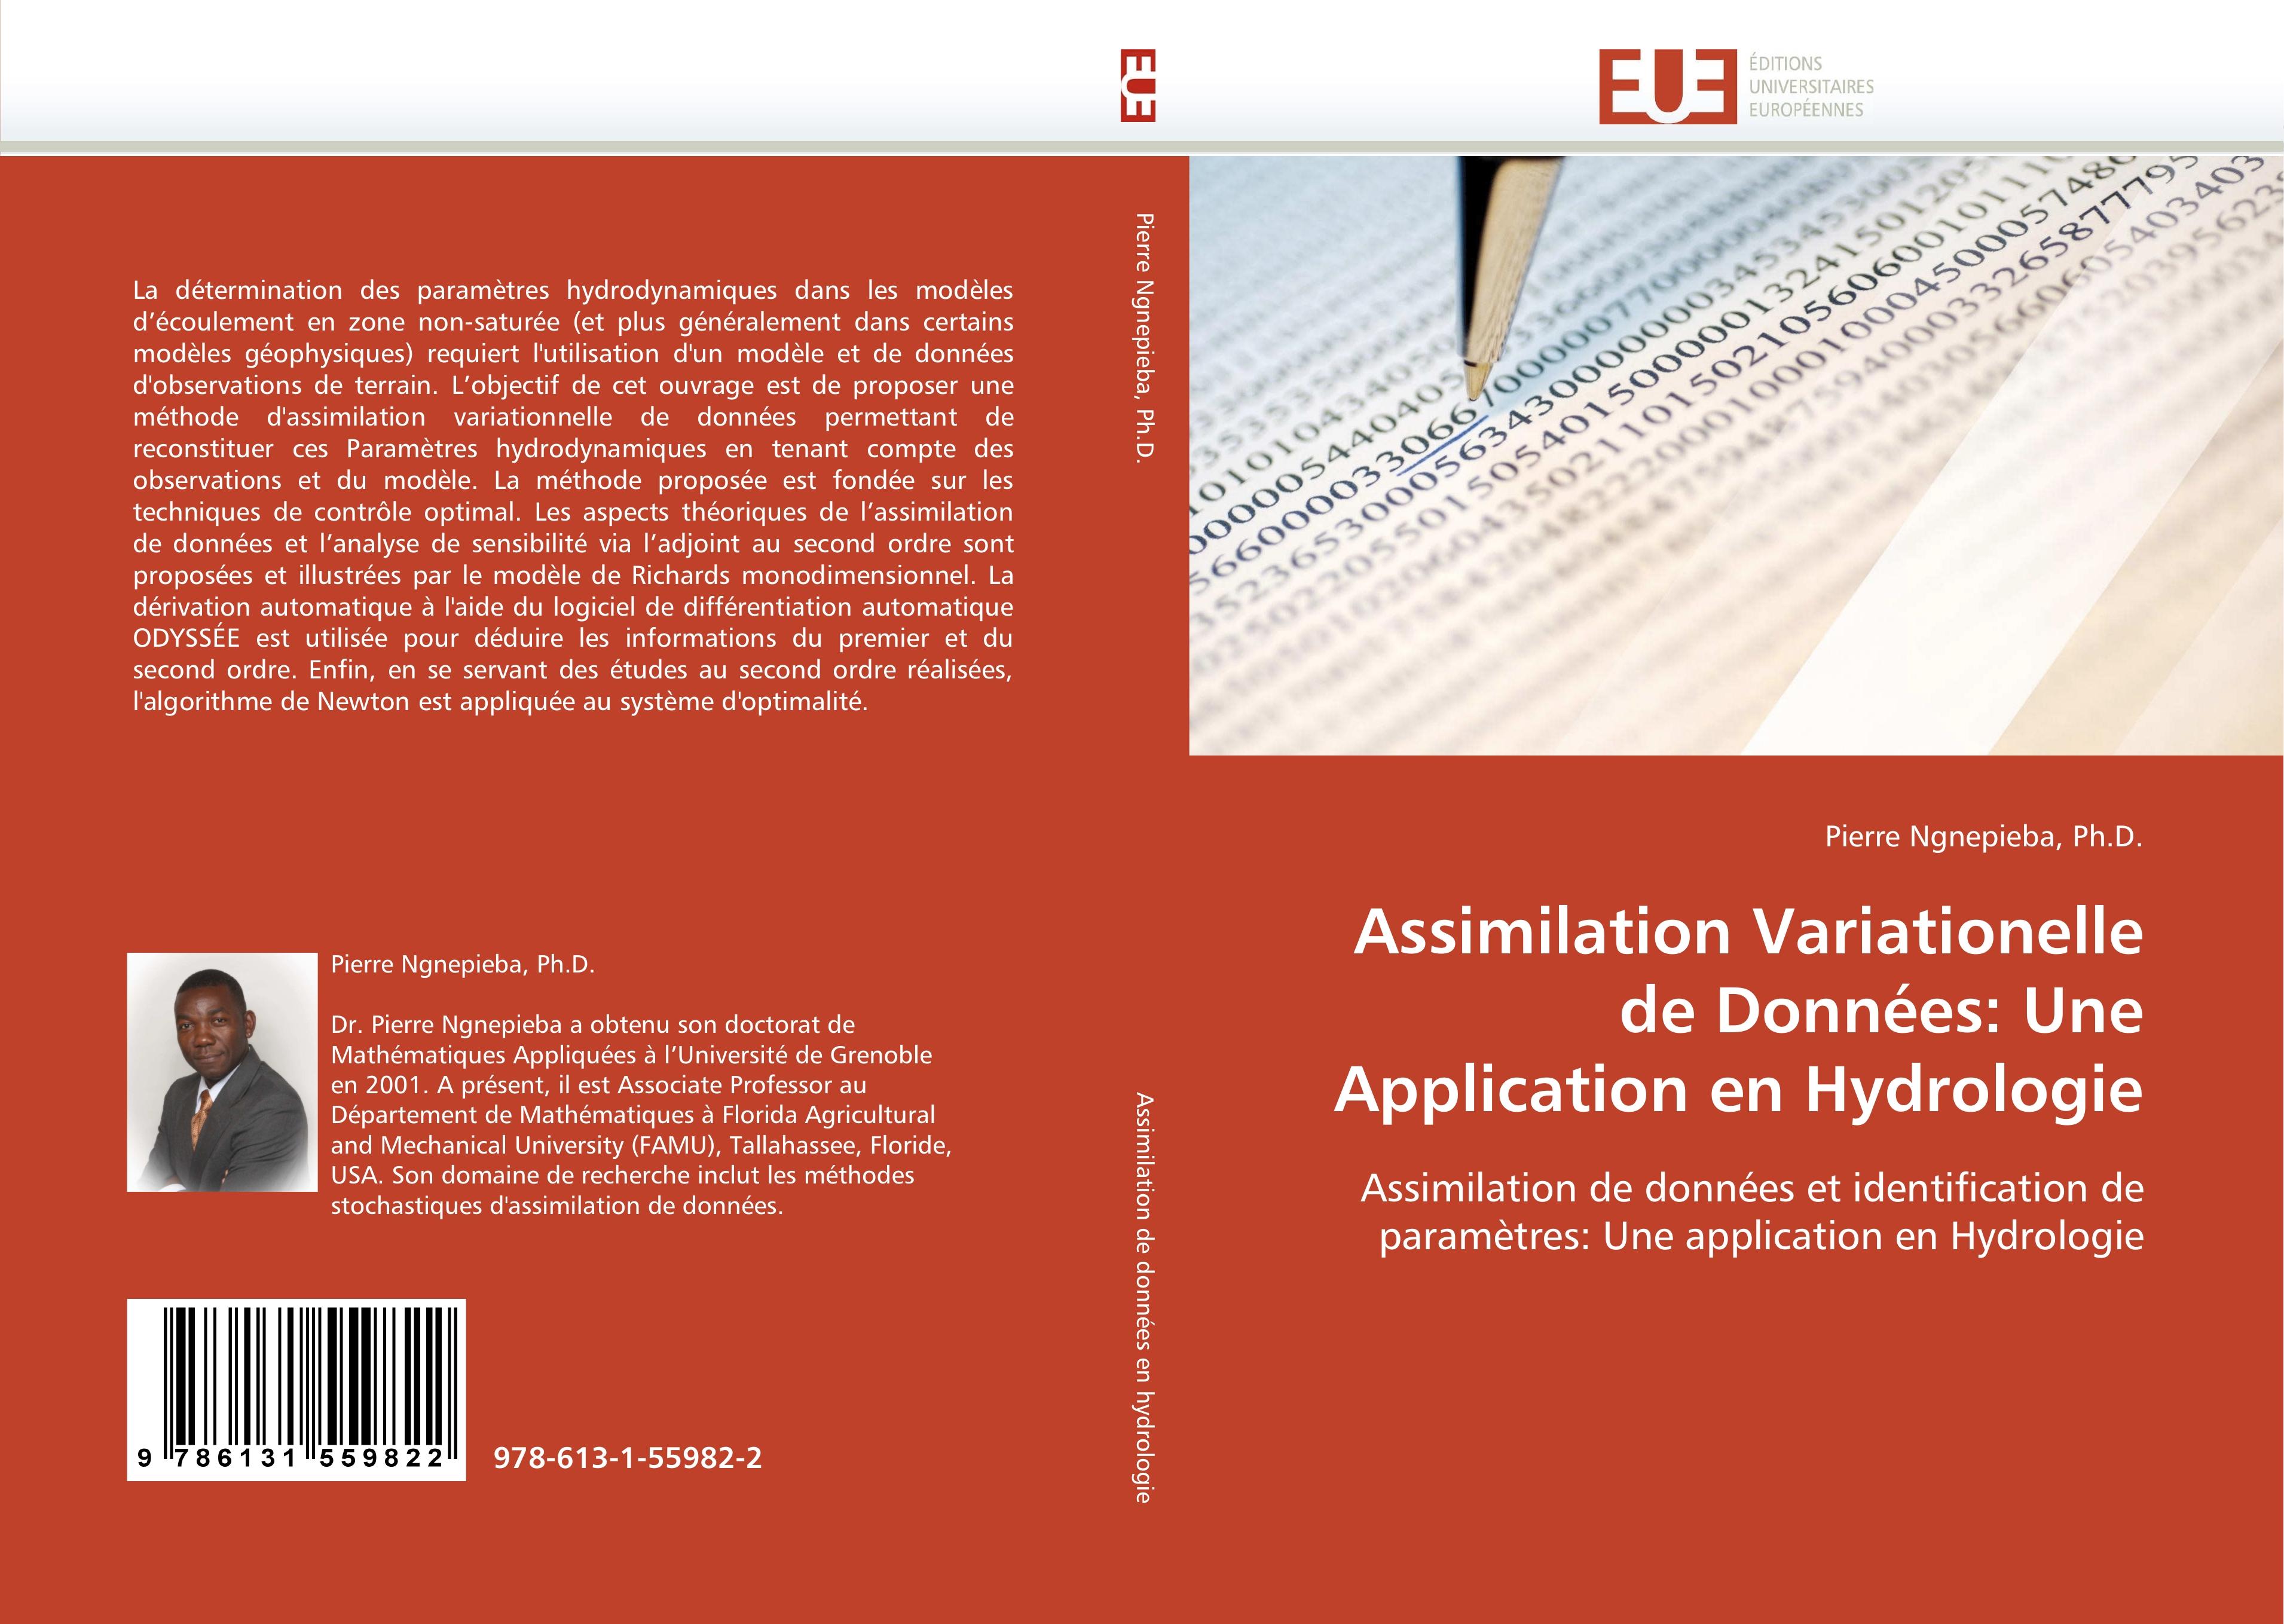 Assimilation Variationelle de Données: Une Application en Hydrologie - Pierre Ngnepieba, Ph.D.